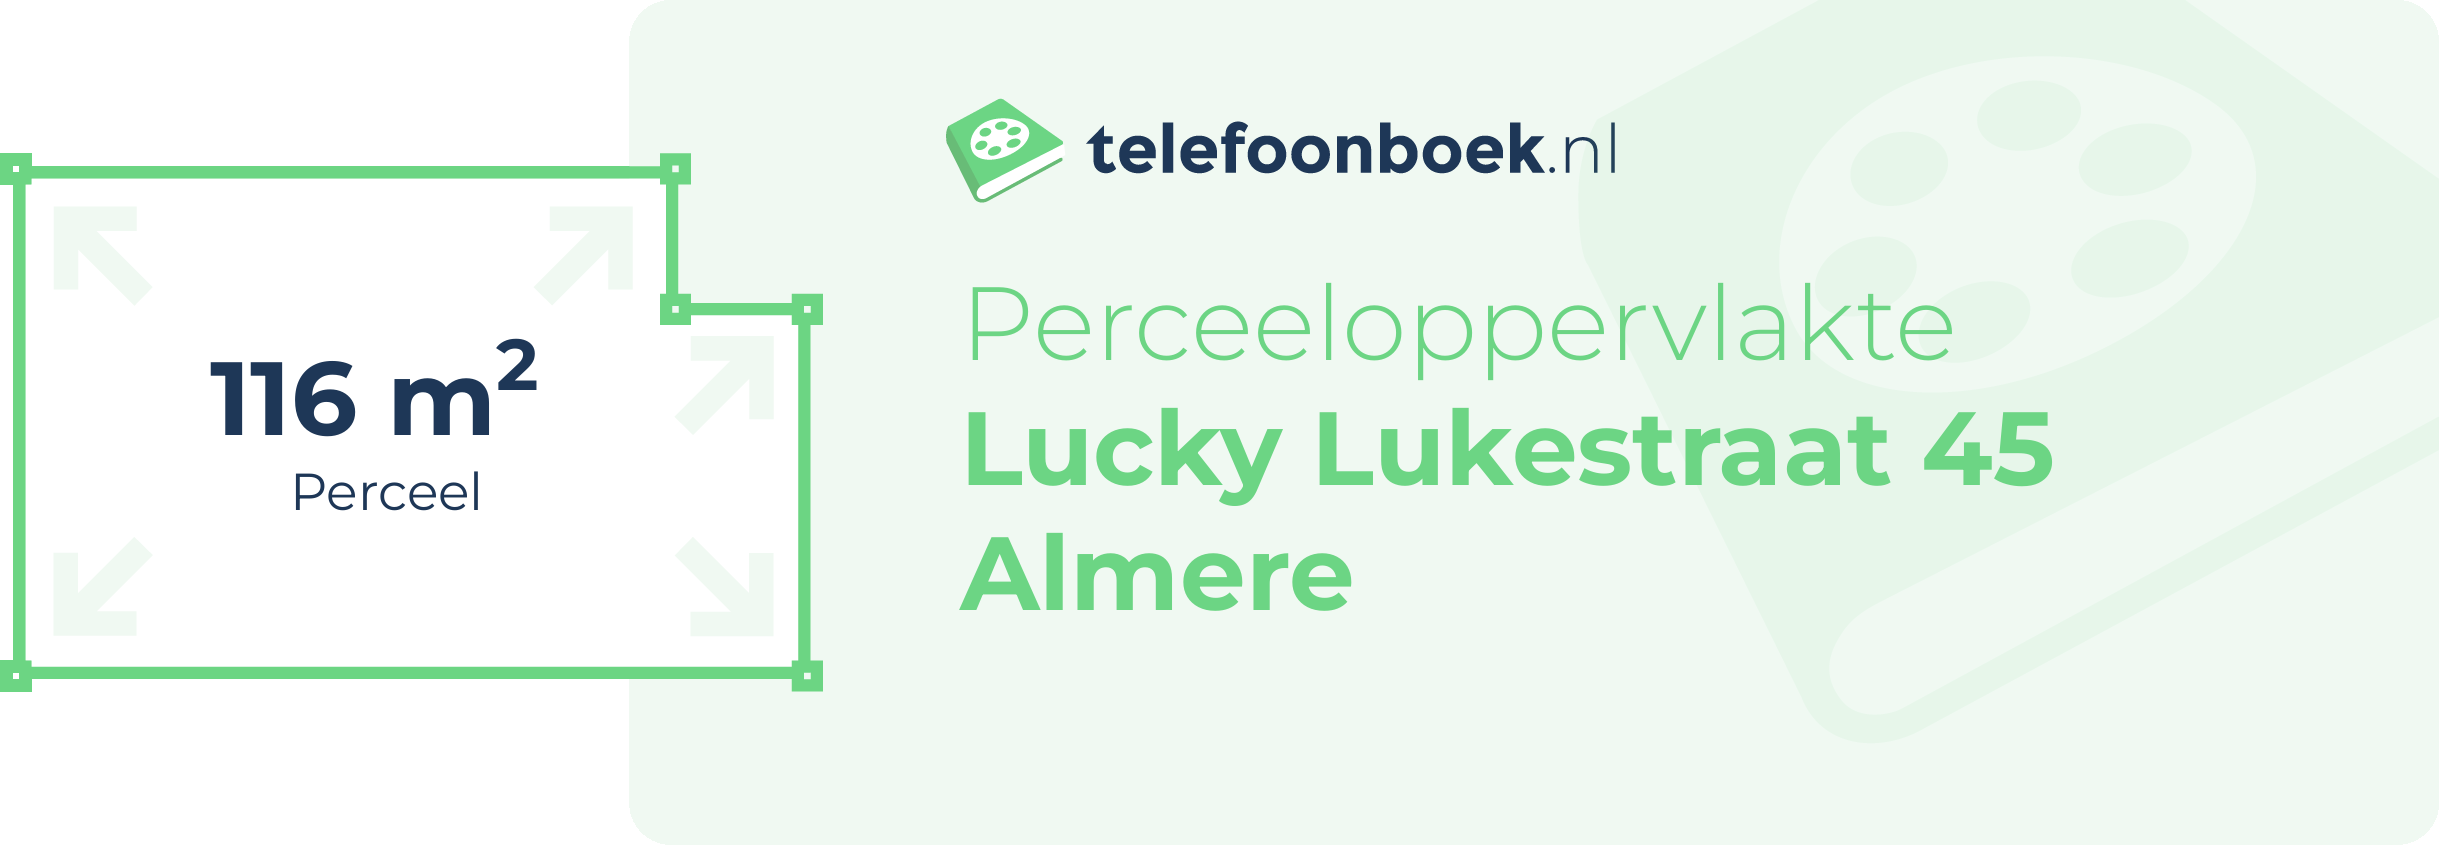 Perceeloppervlakte Lucky Lukestraat 45 Almere